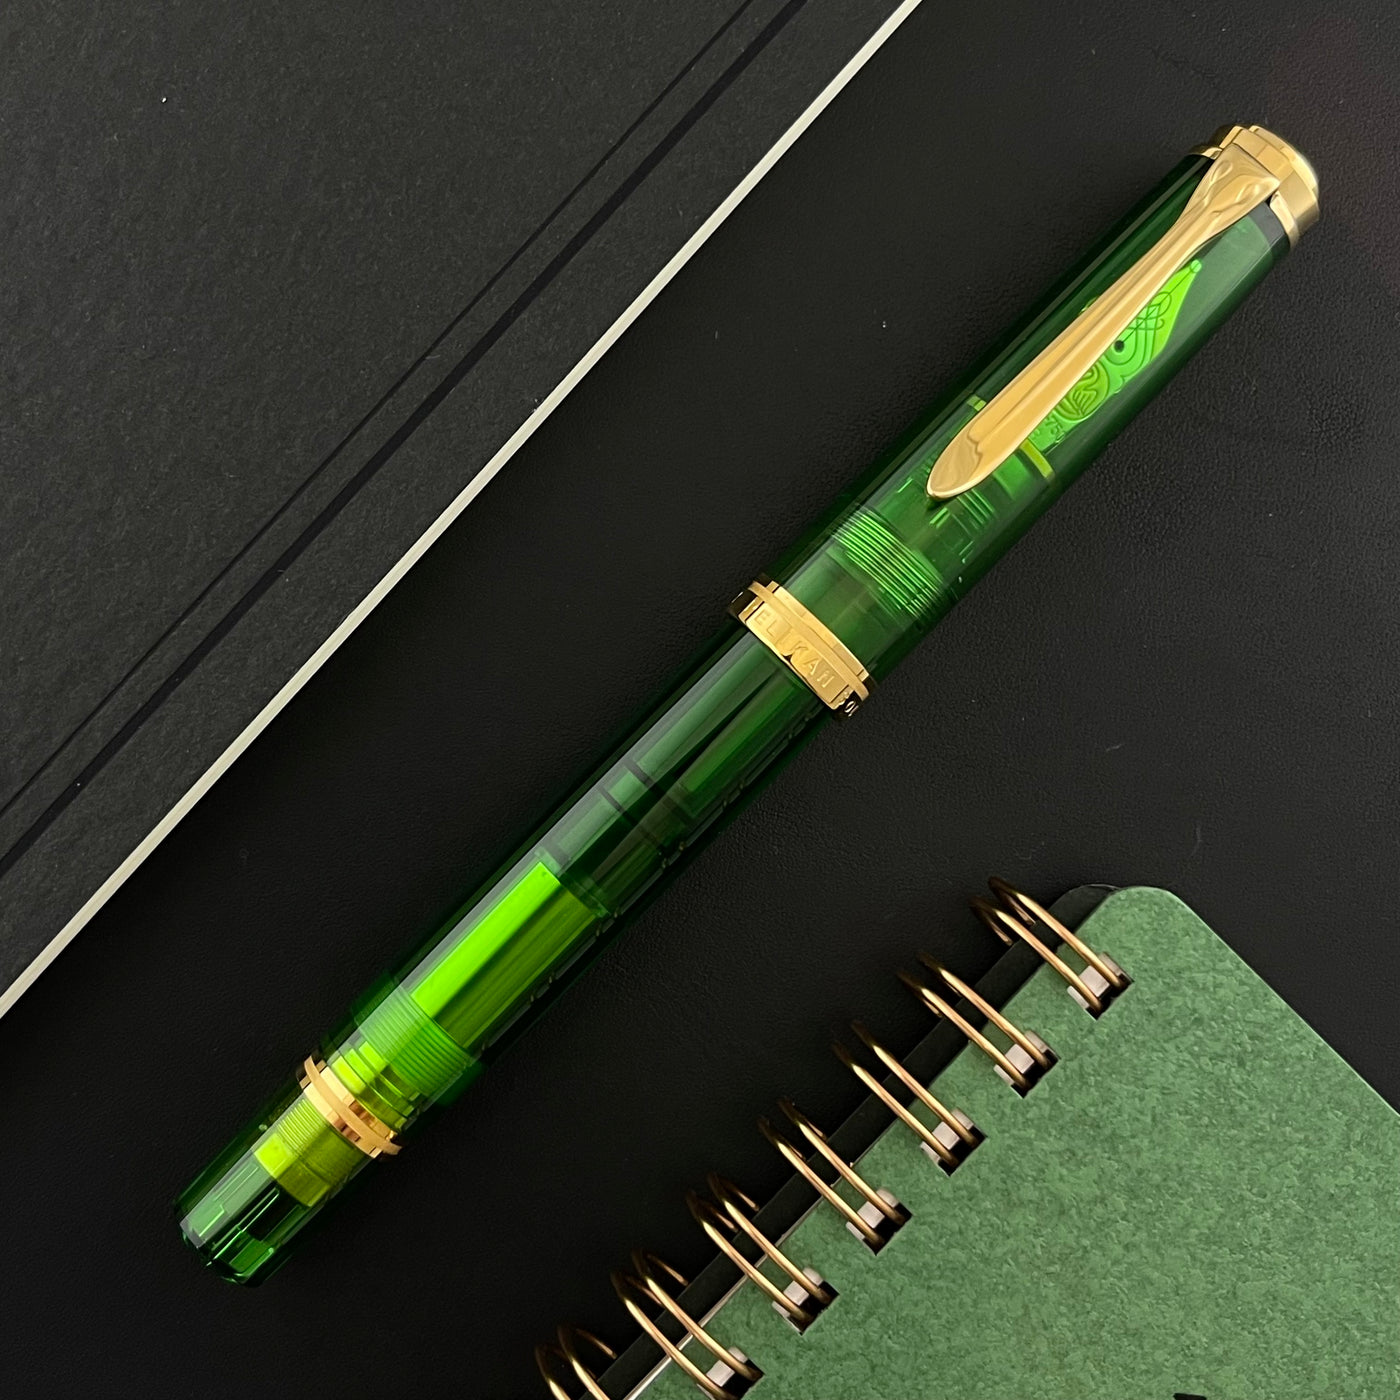 Pelikan Souveran M800 Fountain Pen - Green Demonstrator (Special Edition)